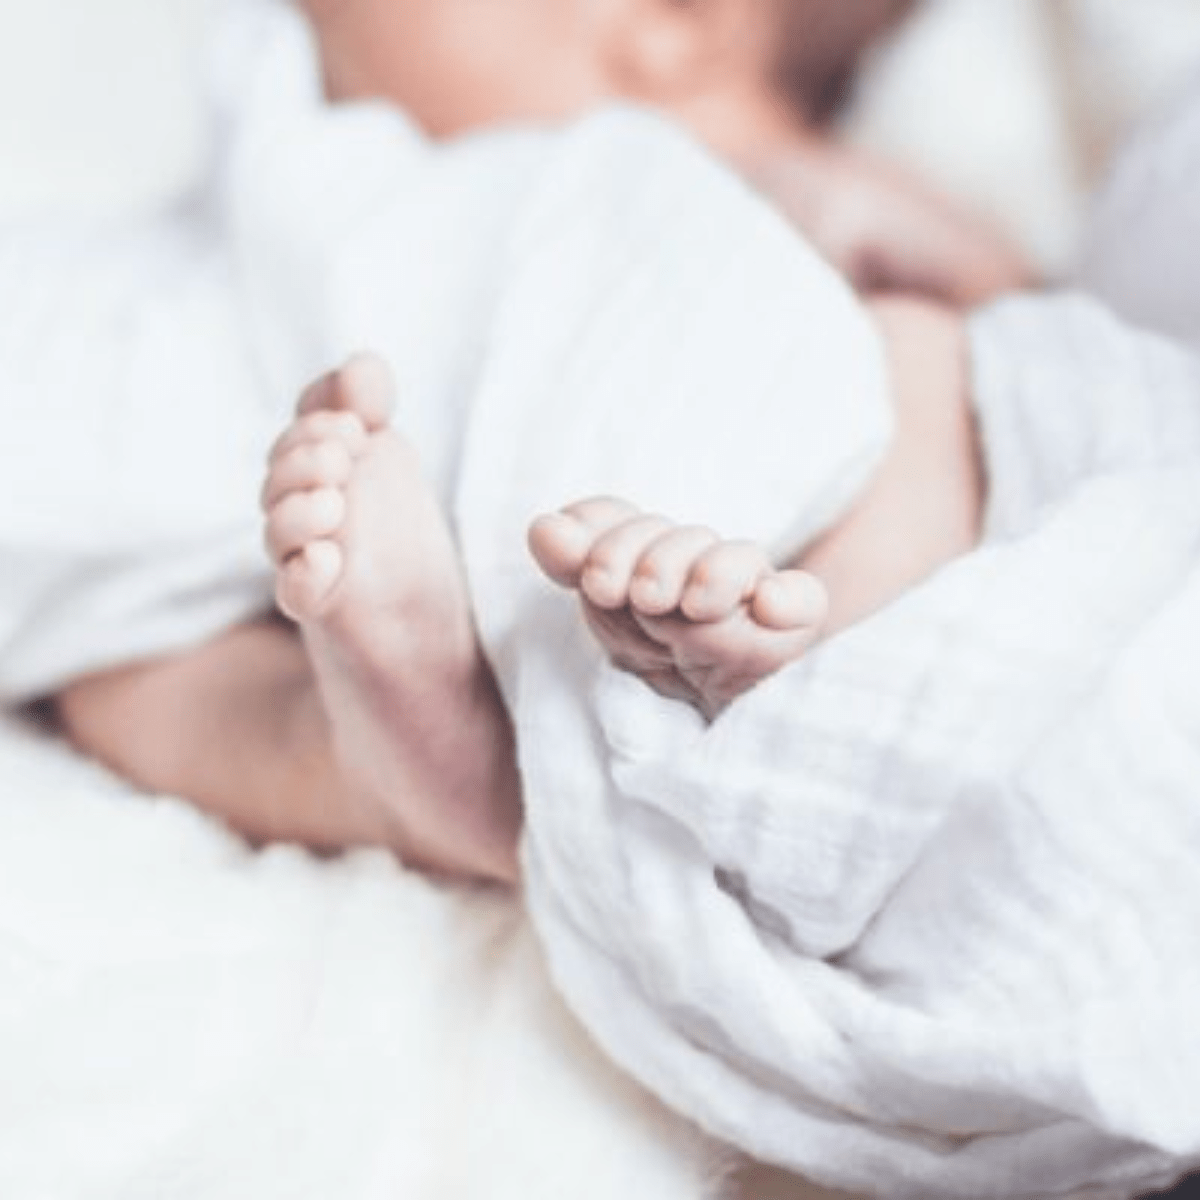 Muselinas para bebés, qué son y para qué sirven